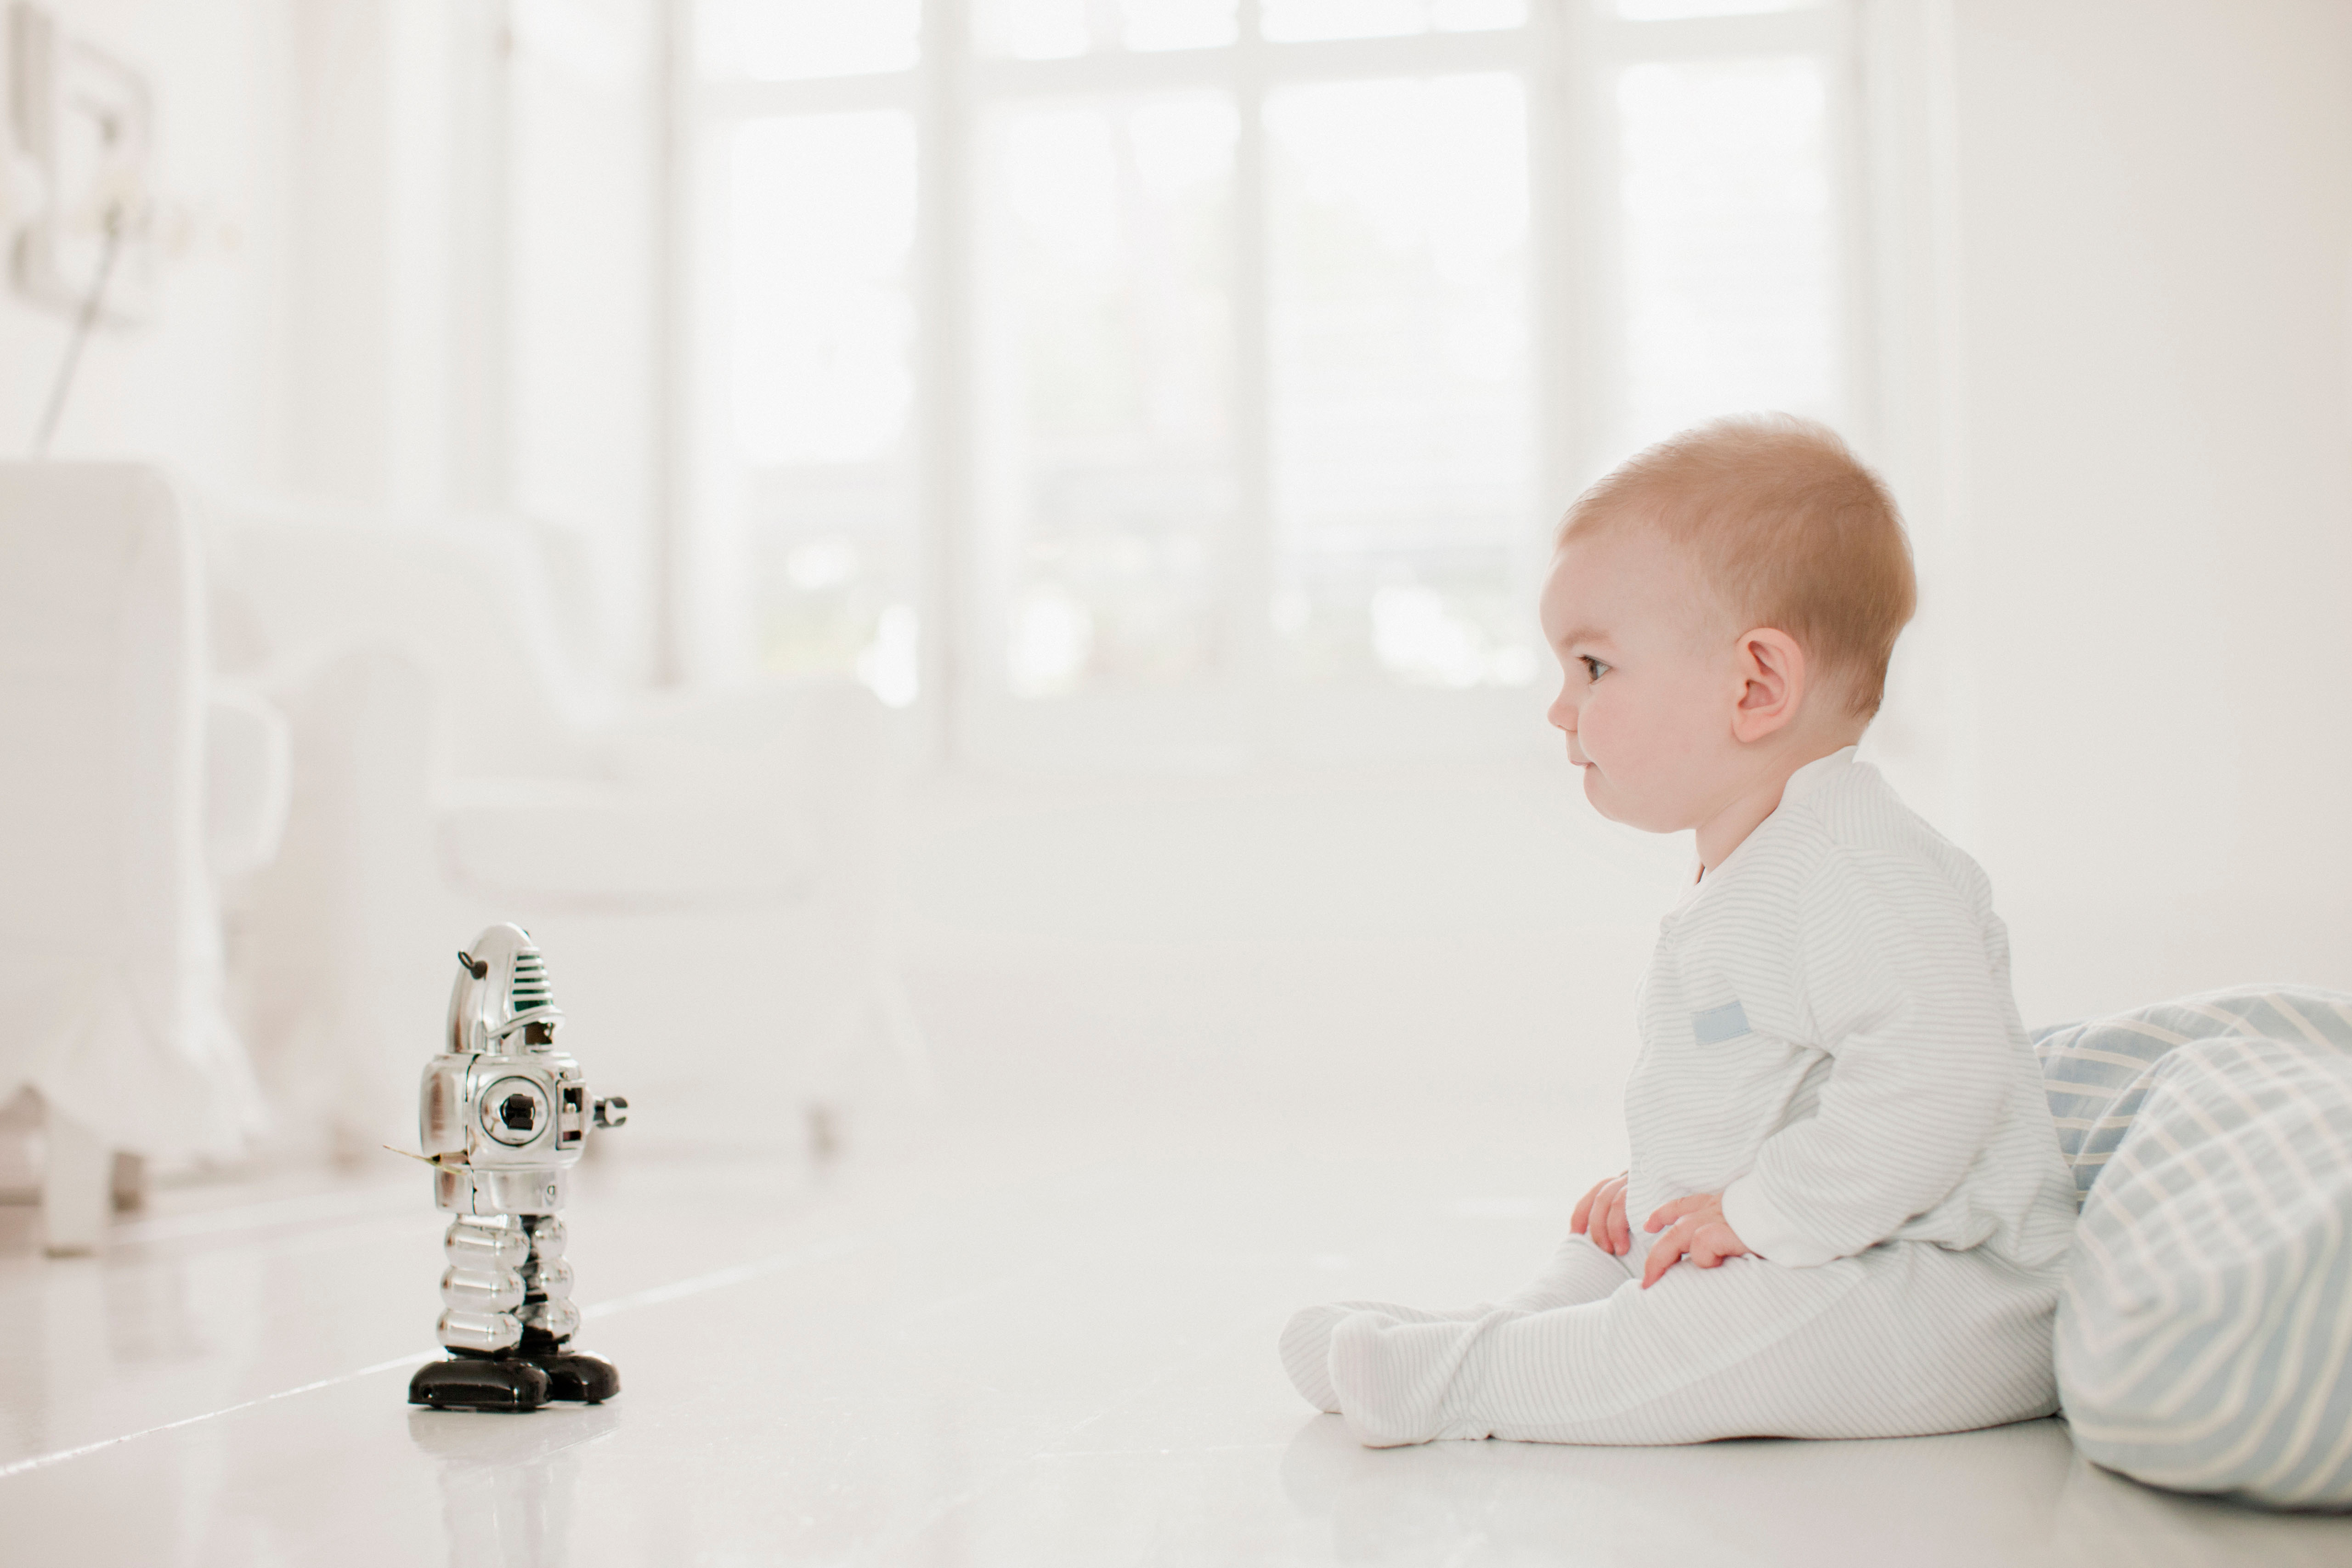 Can a robot replace a parent?